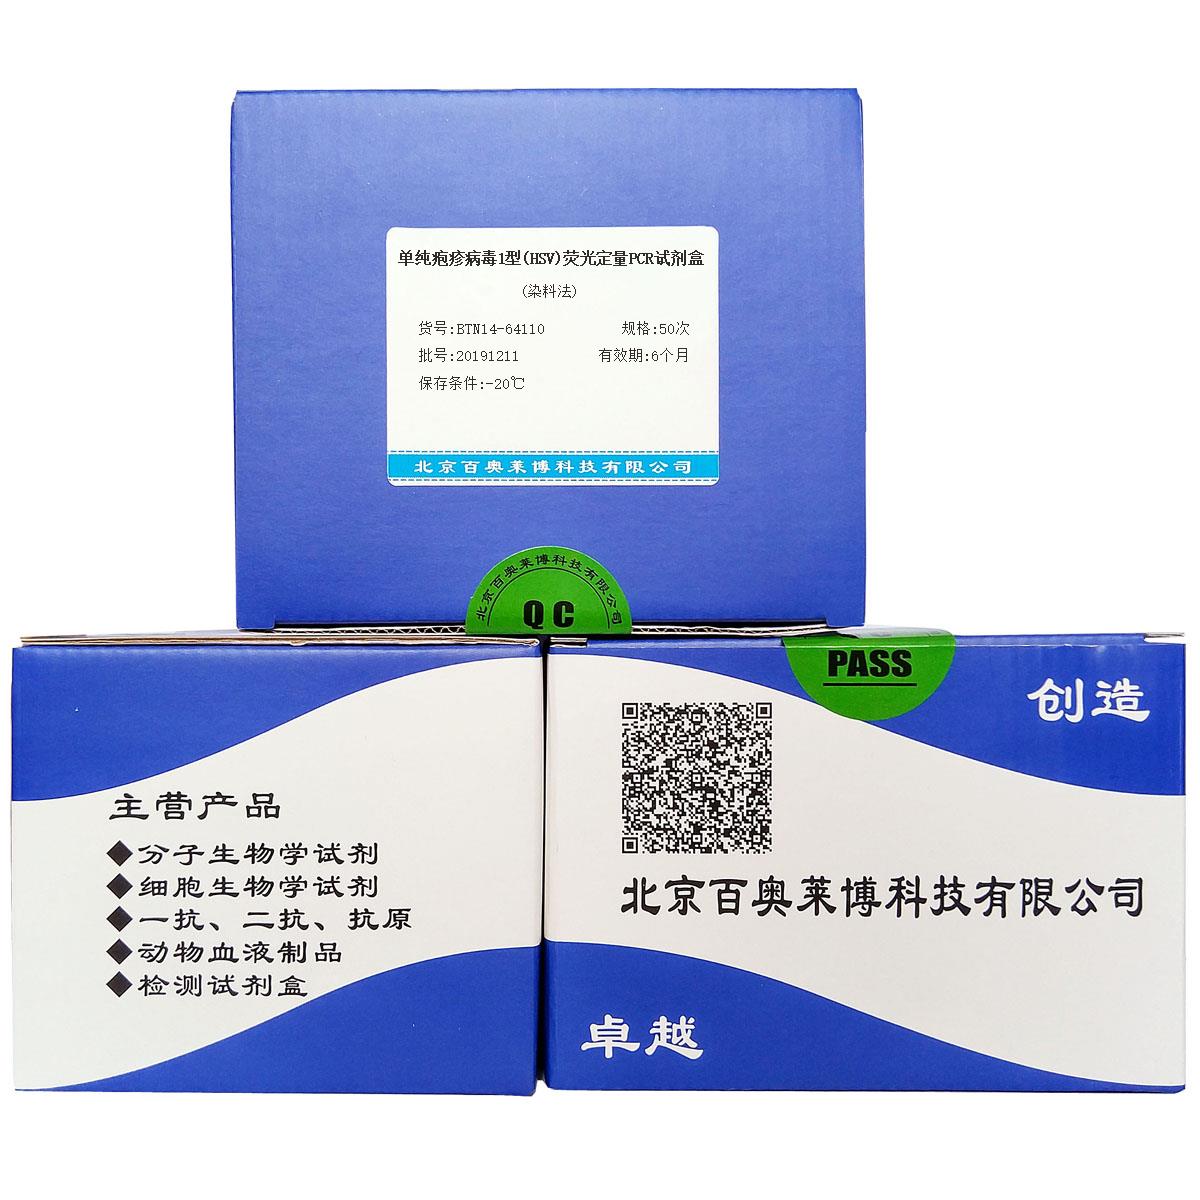 单纯疱疹病毒1型(HSV)荧光定量PCR试剂盒(染料法)